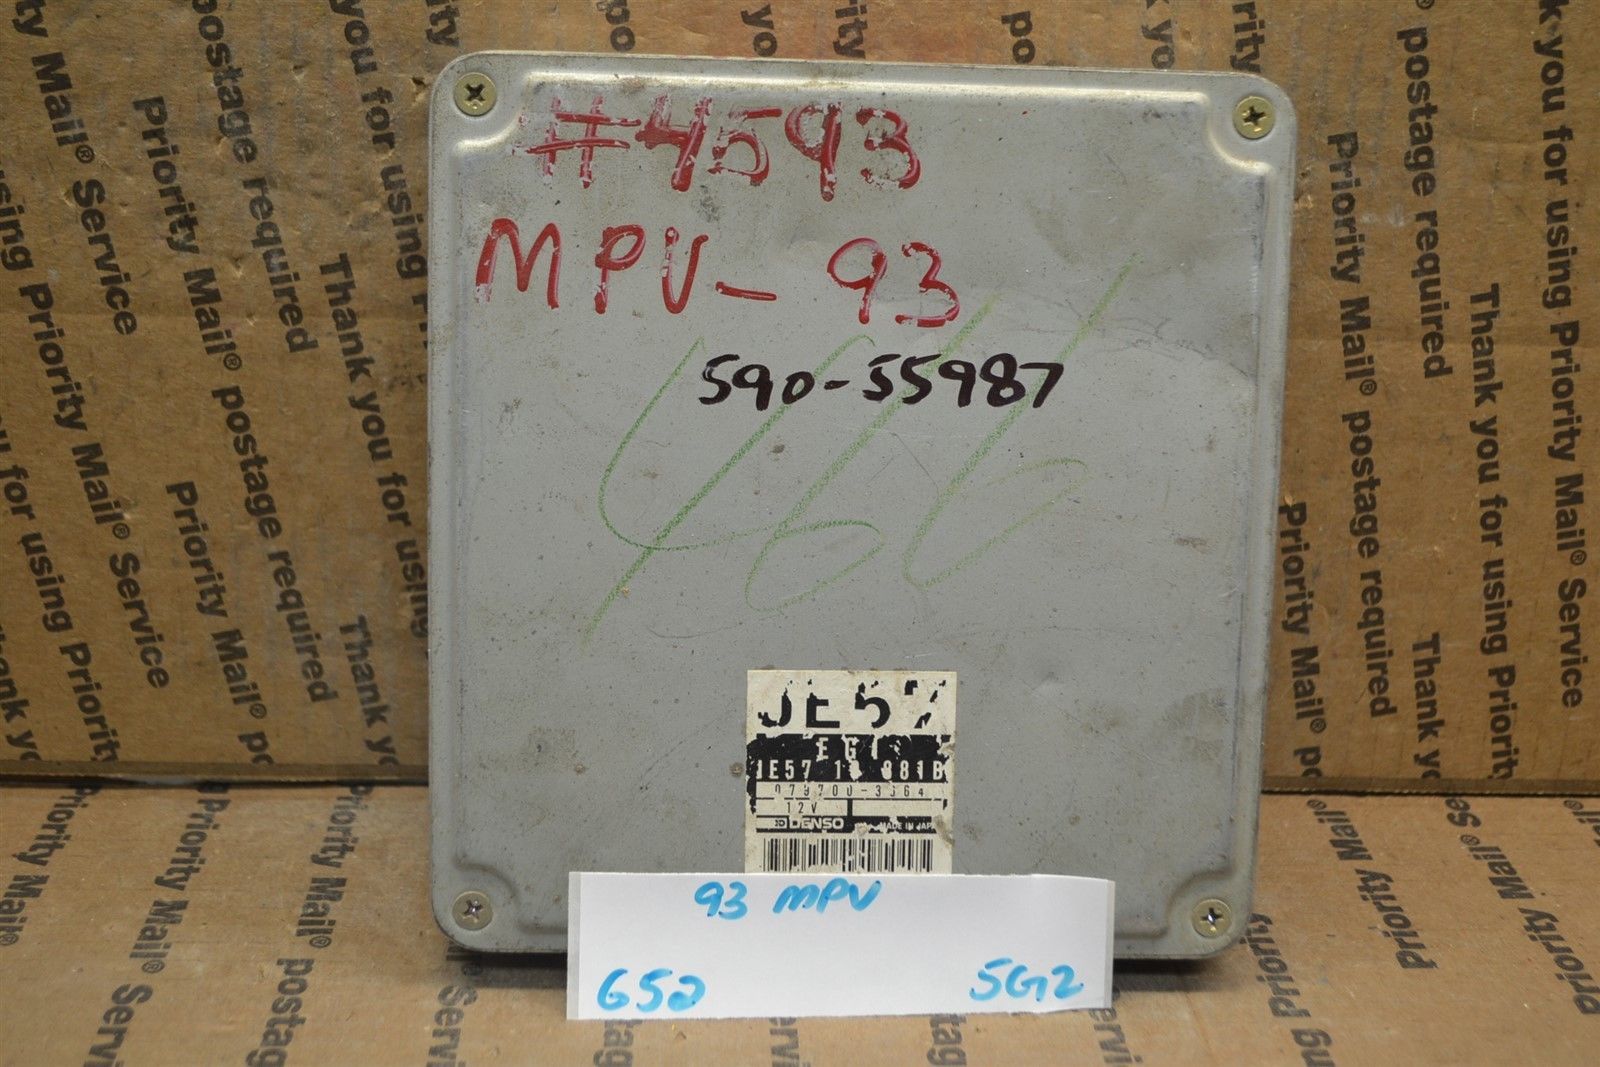 Primary image for 1992 1993 Mazda MPV Engine Control Unit ECU JE5718881B Module 652-5G2